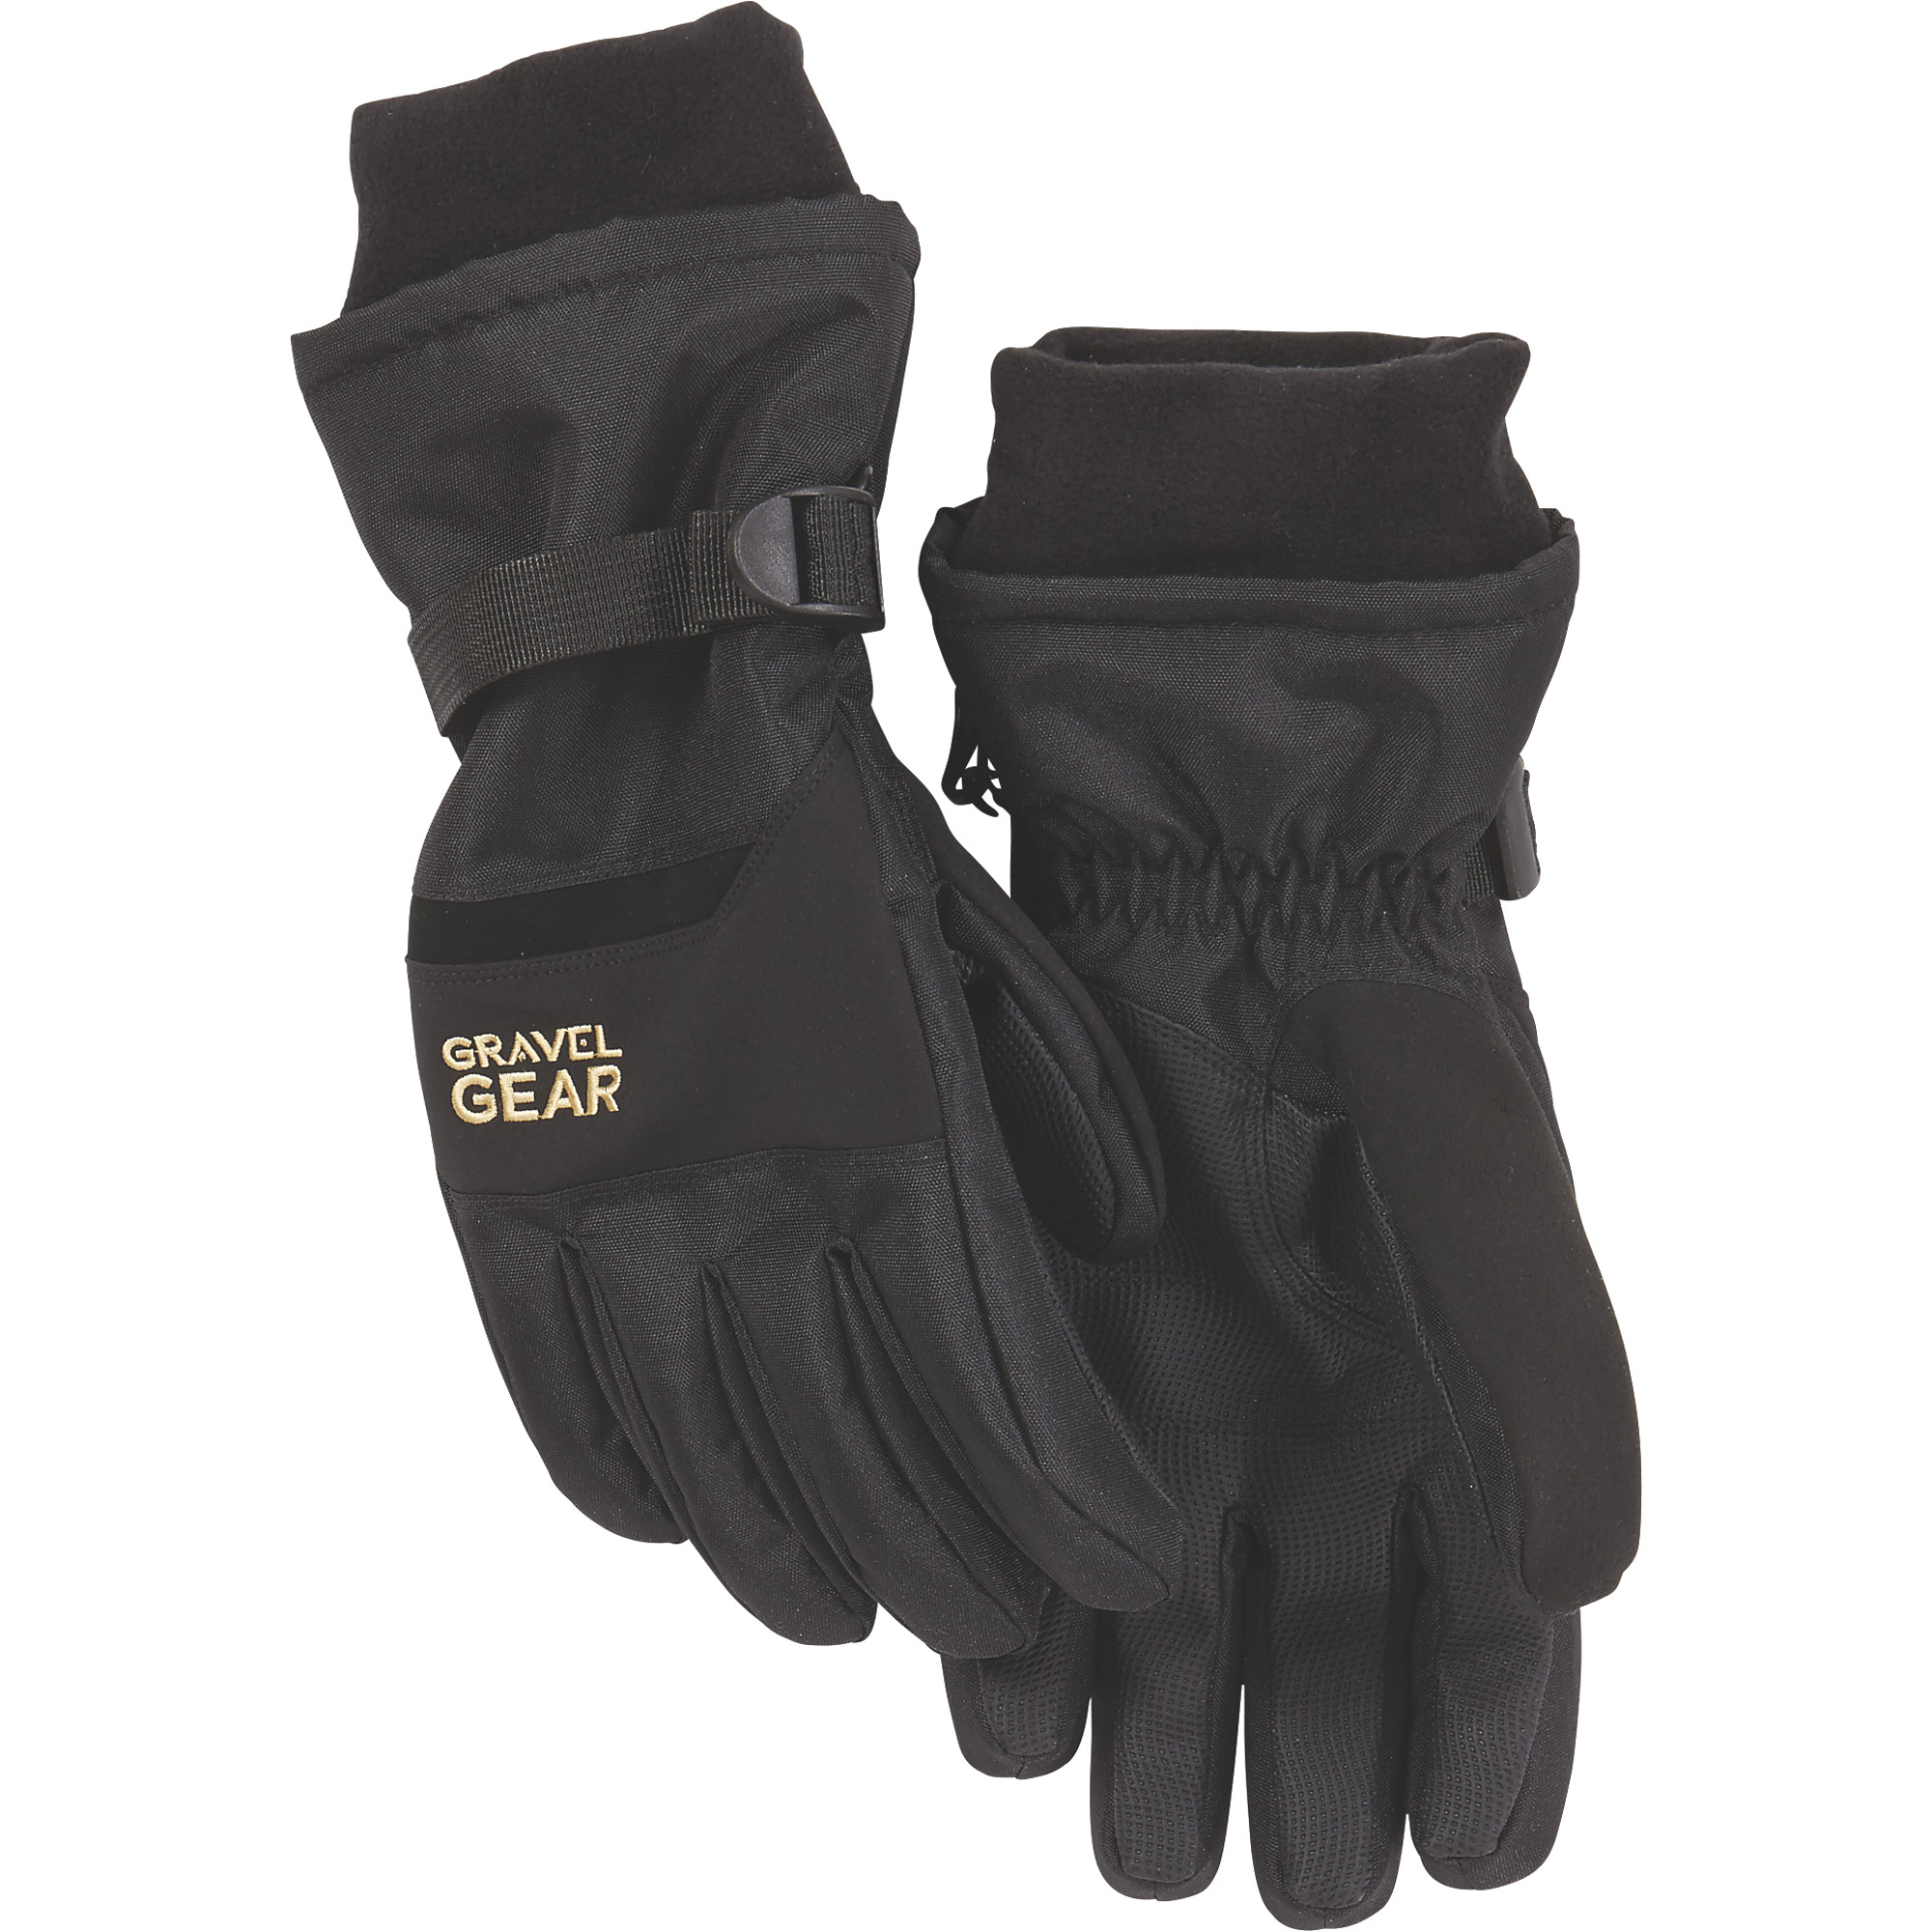 Gravel Gear Men's Waterproof Winter Gloves â Black, XL